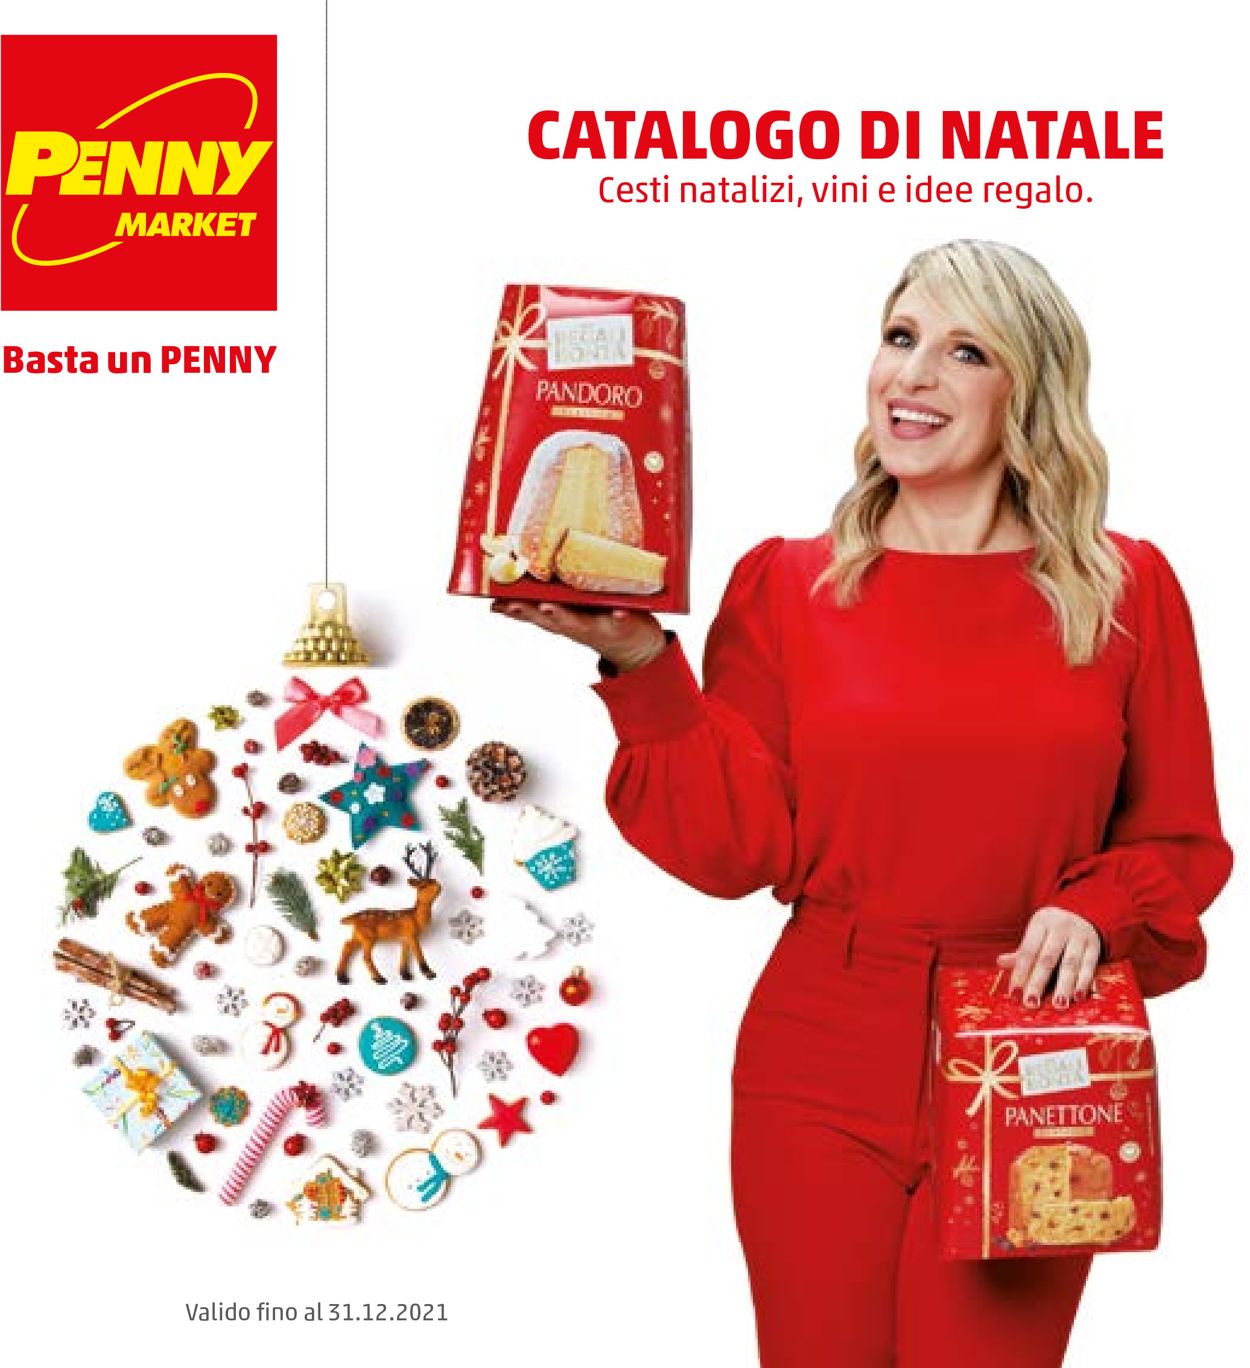 Volantino Penny Market - CATALOGO DI NATALE 2021 - Offerte 08/11-31/12/2021